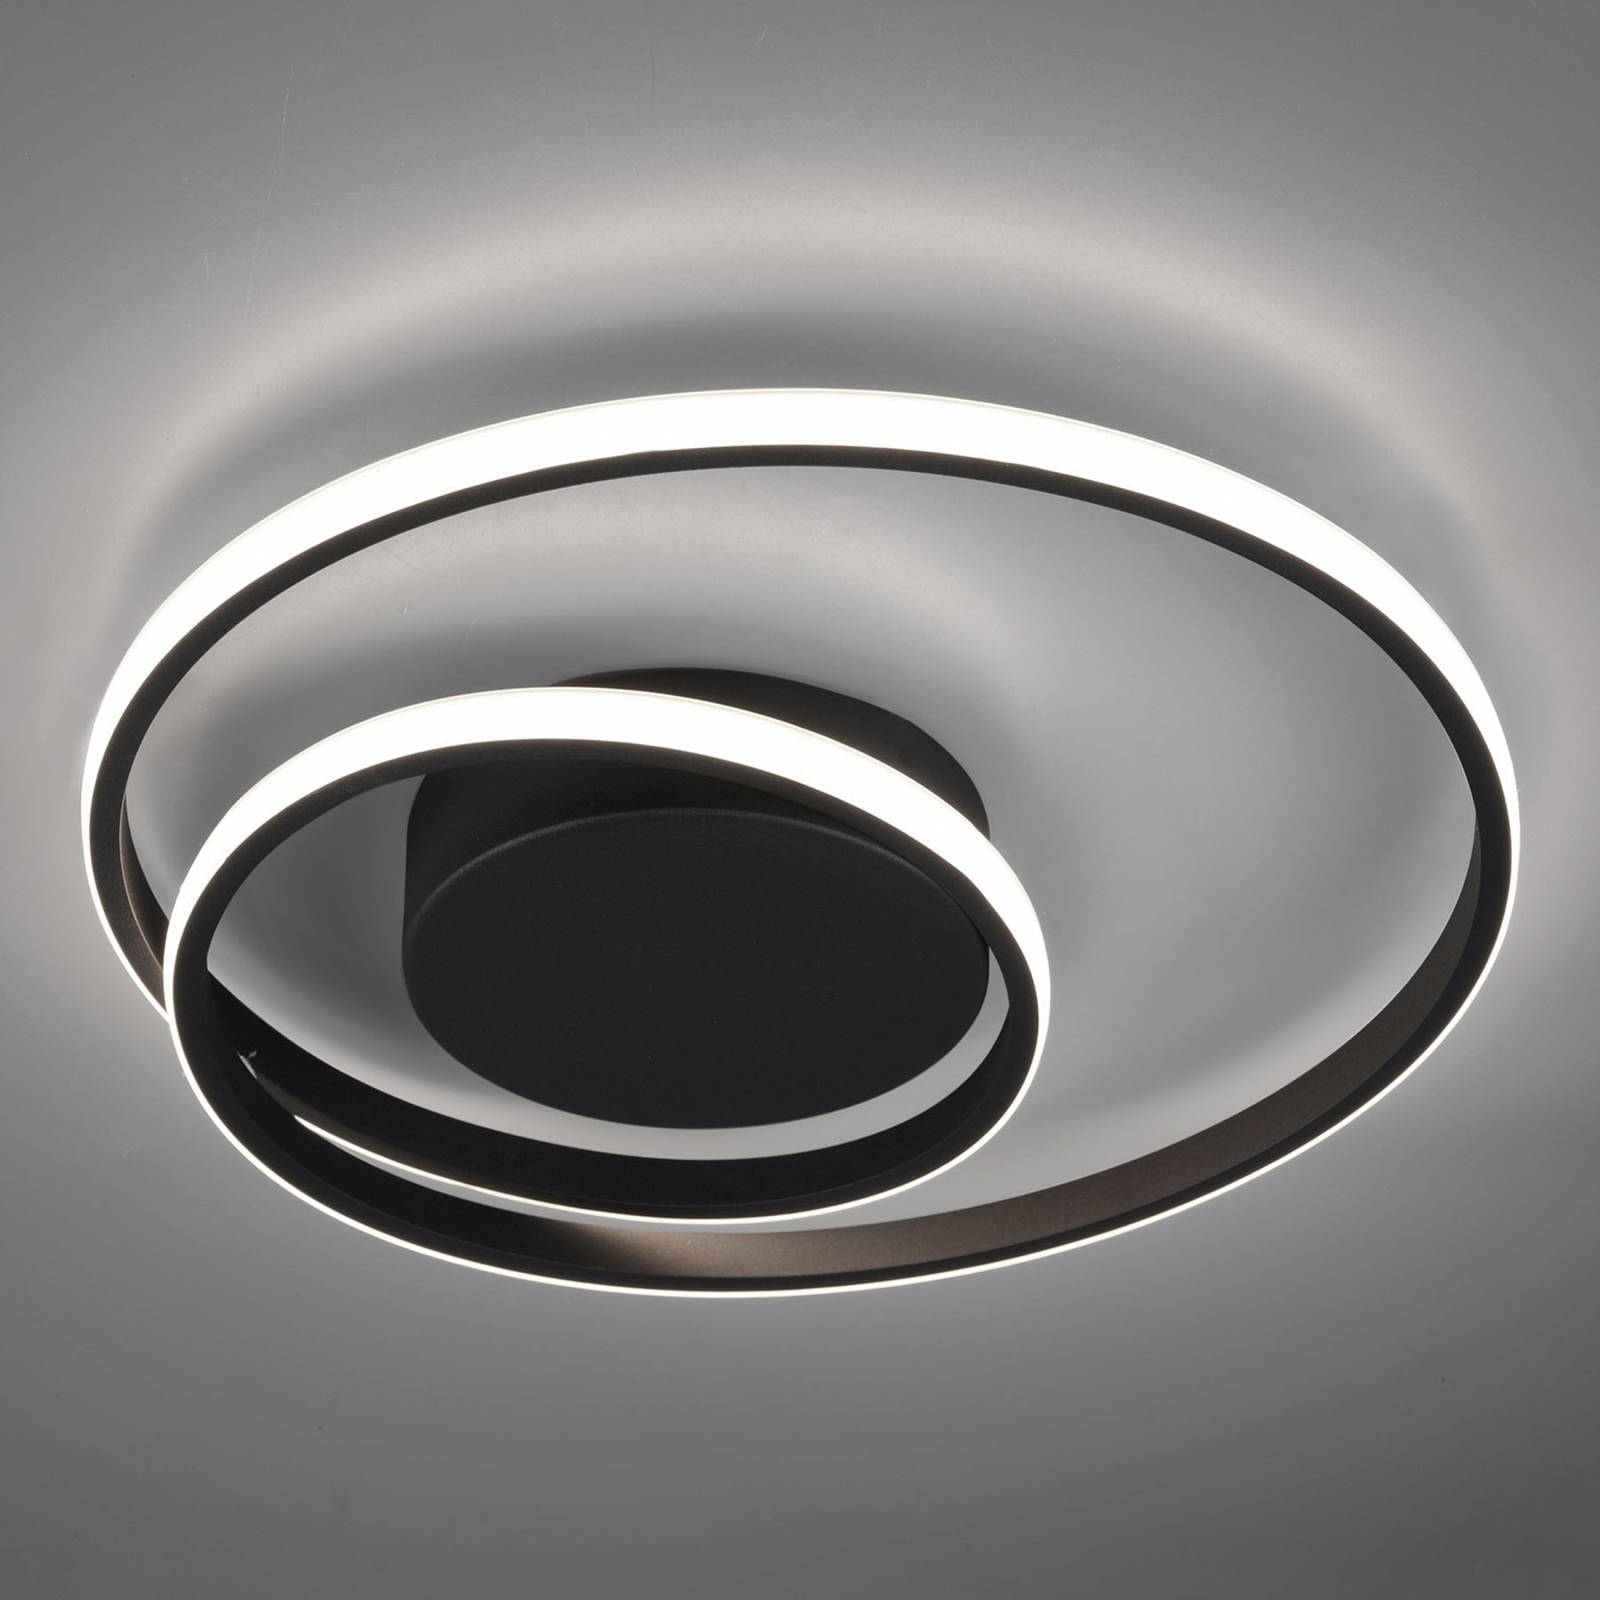 Zibal LED ceiling light, dimmable, black